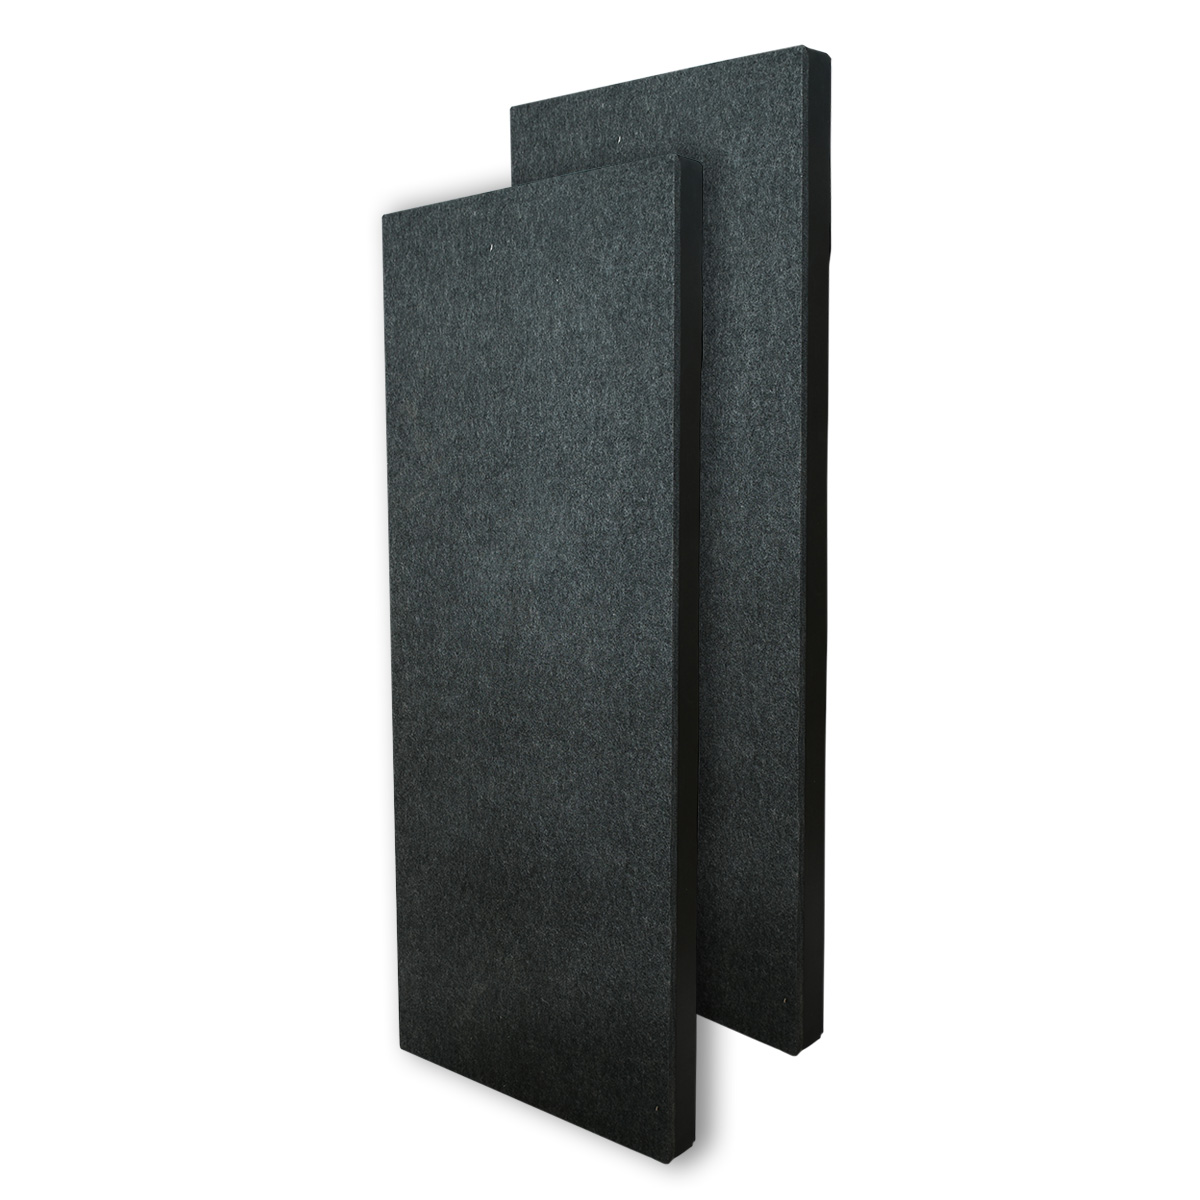 Professional acoustic panel eal4-Lxt2 espuma acústica absorbente lisa sala tv paq 2 pza 1mx60x10cm